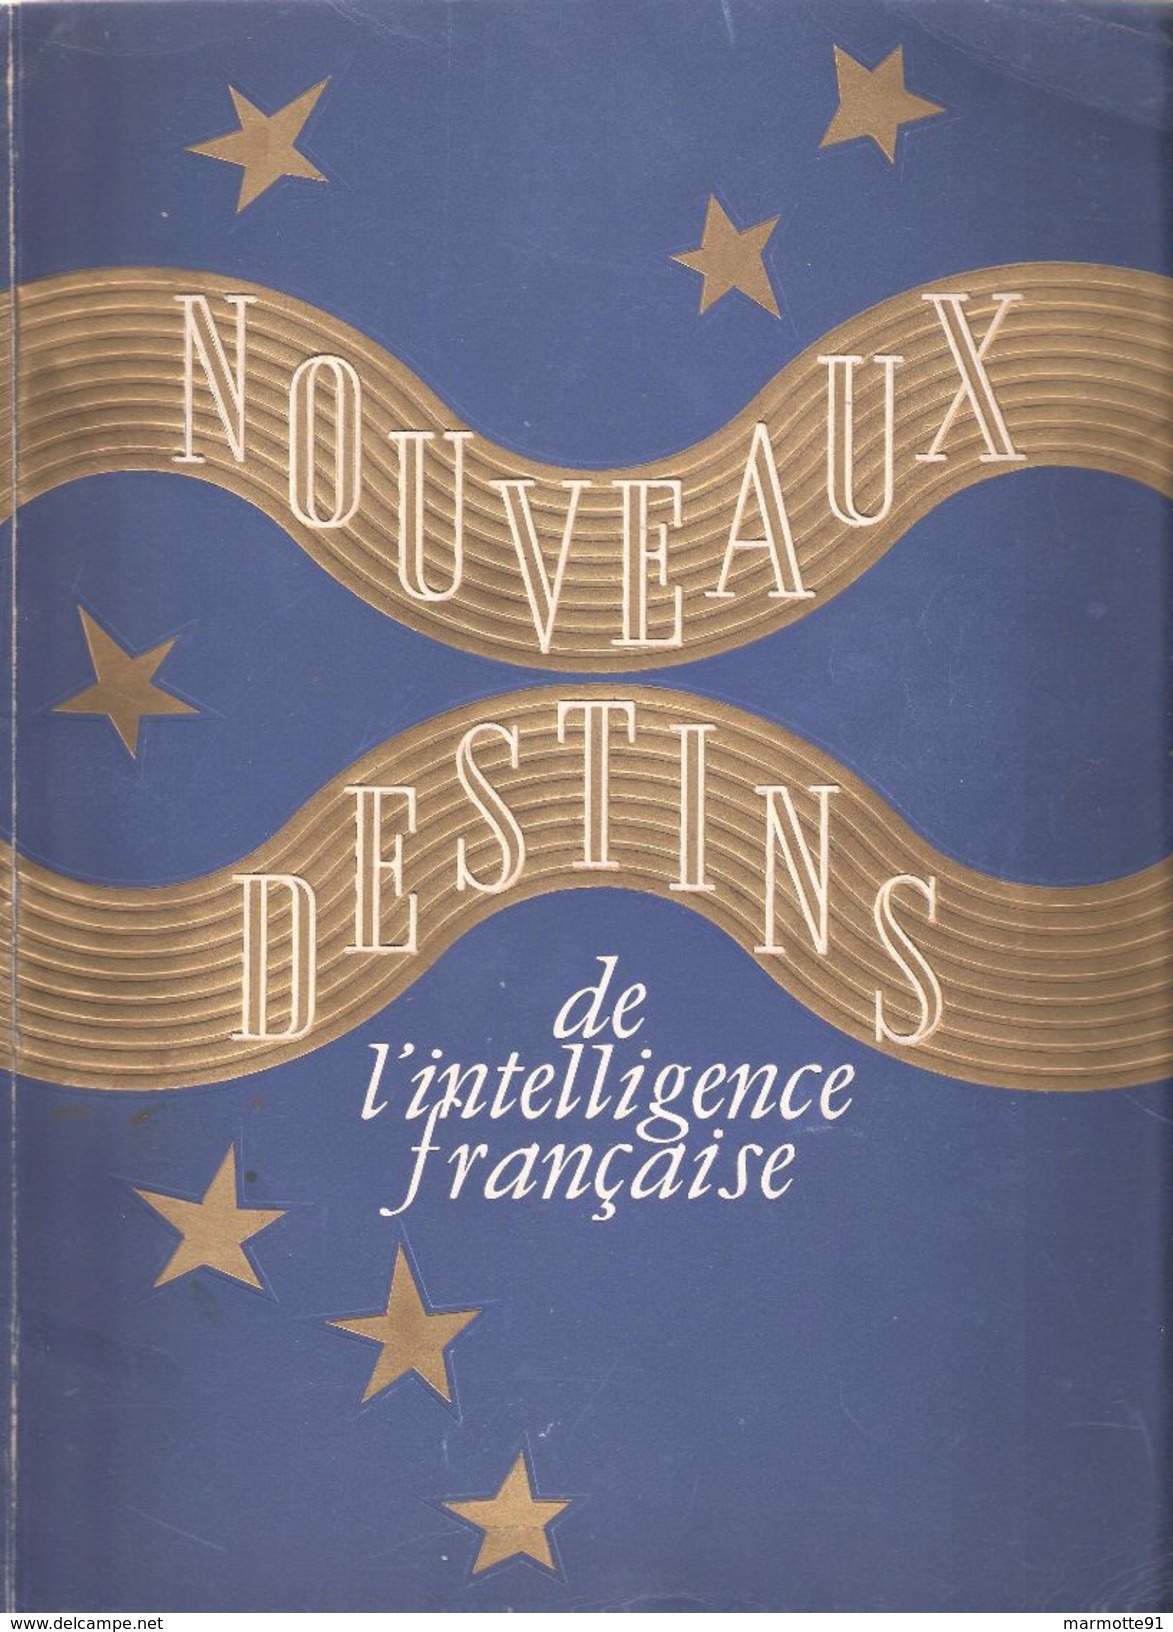 NOUVEAUX DESTINS INTELLIGENCE FRANCAISE 1942 ETAT FRANCAIS VICHY PROPAGANDE MARECHAL - 1939-45